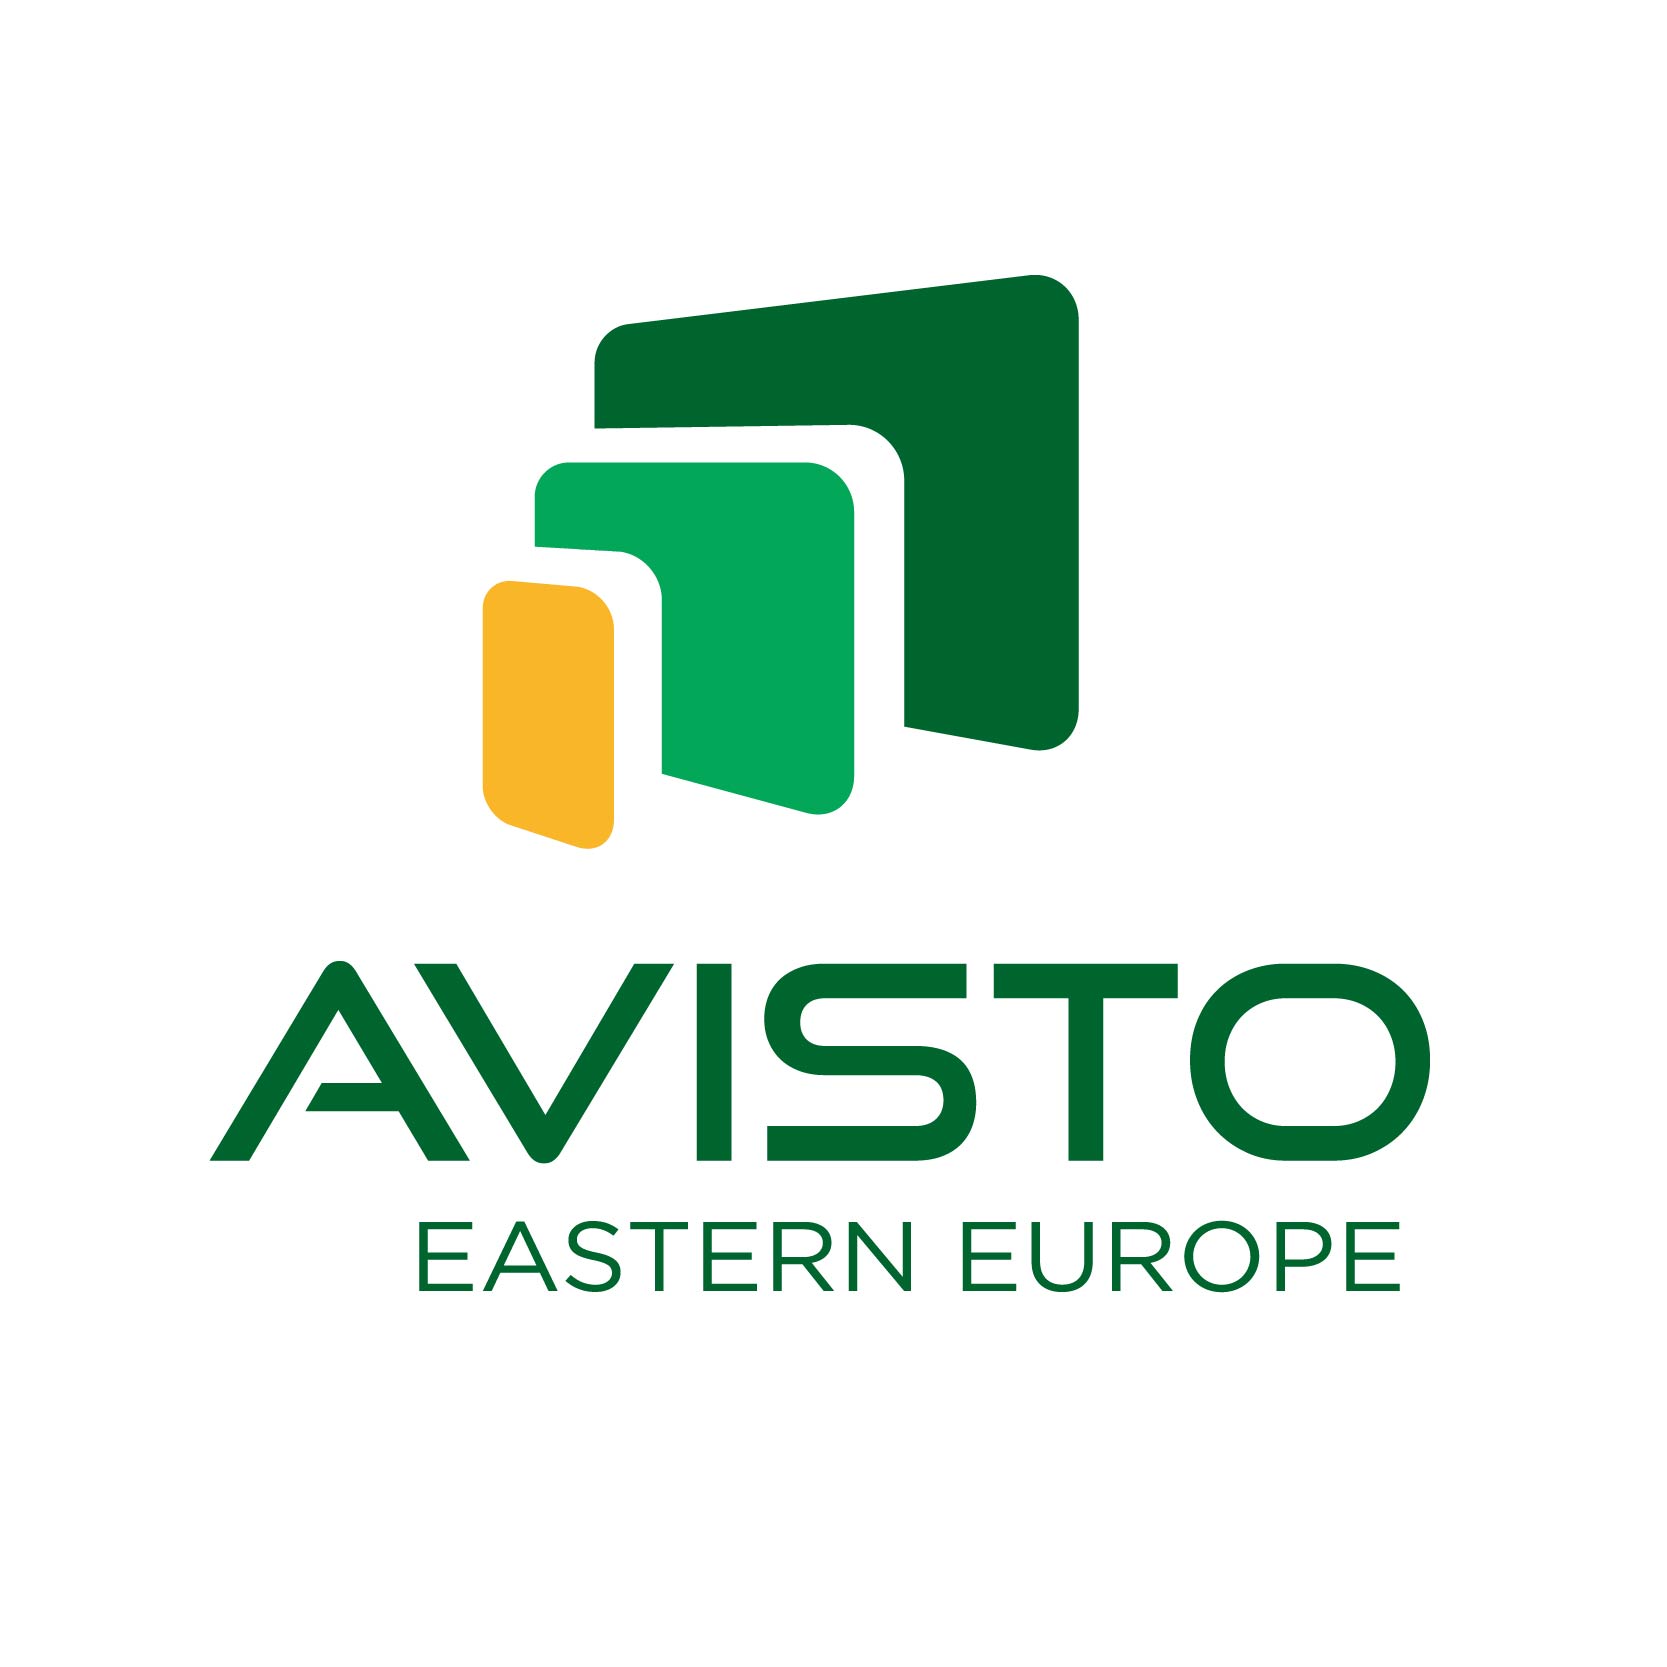 Avisto Eastern Europe